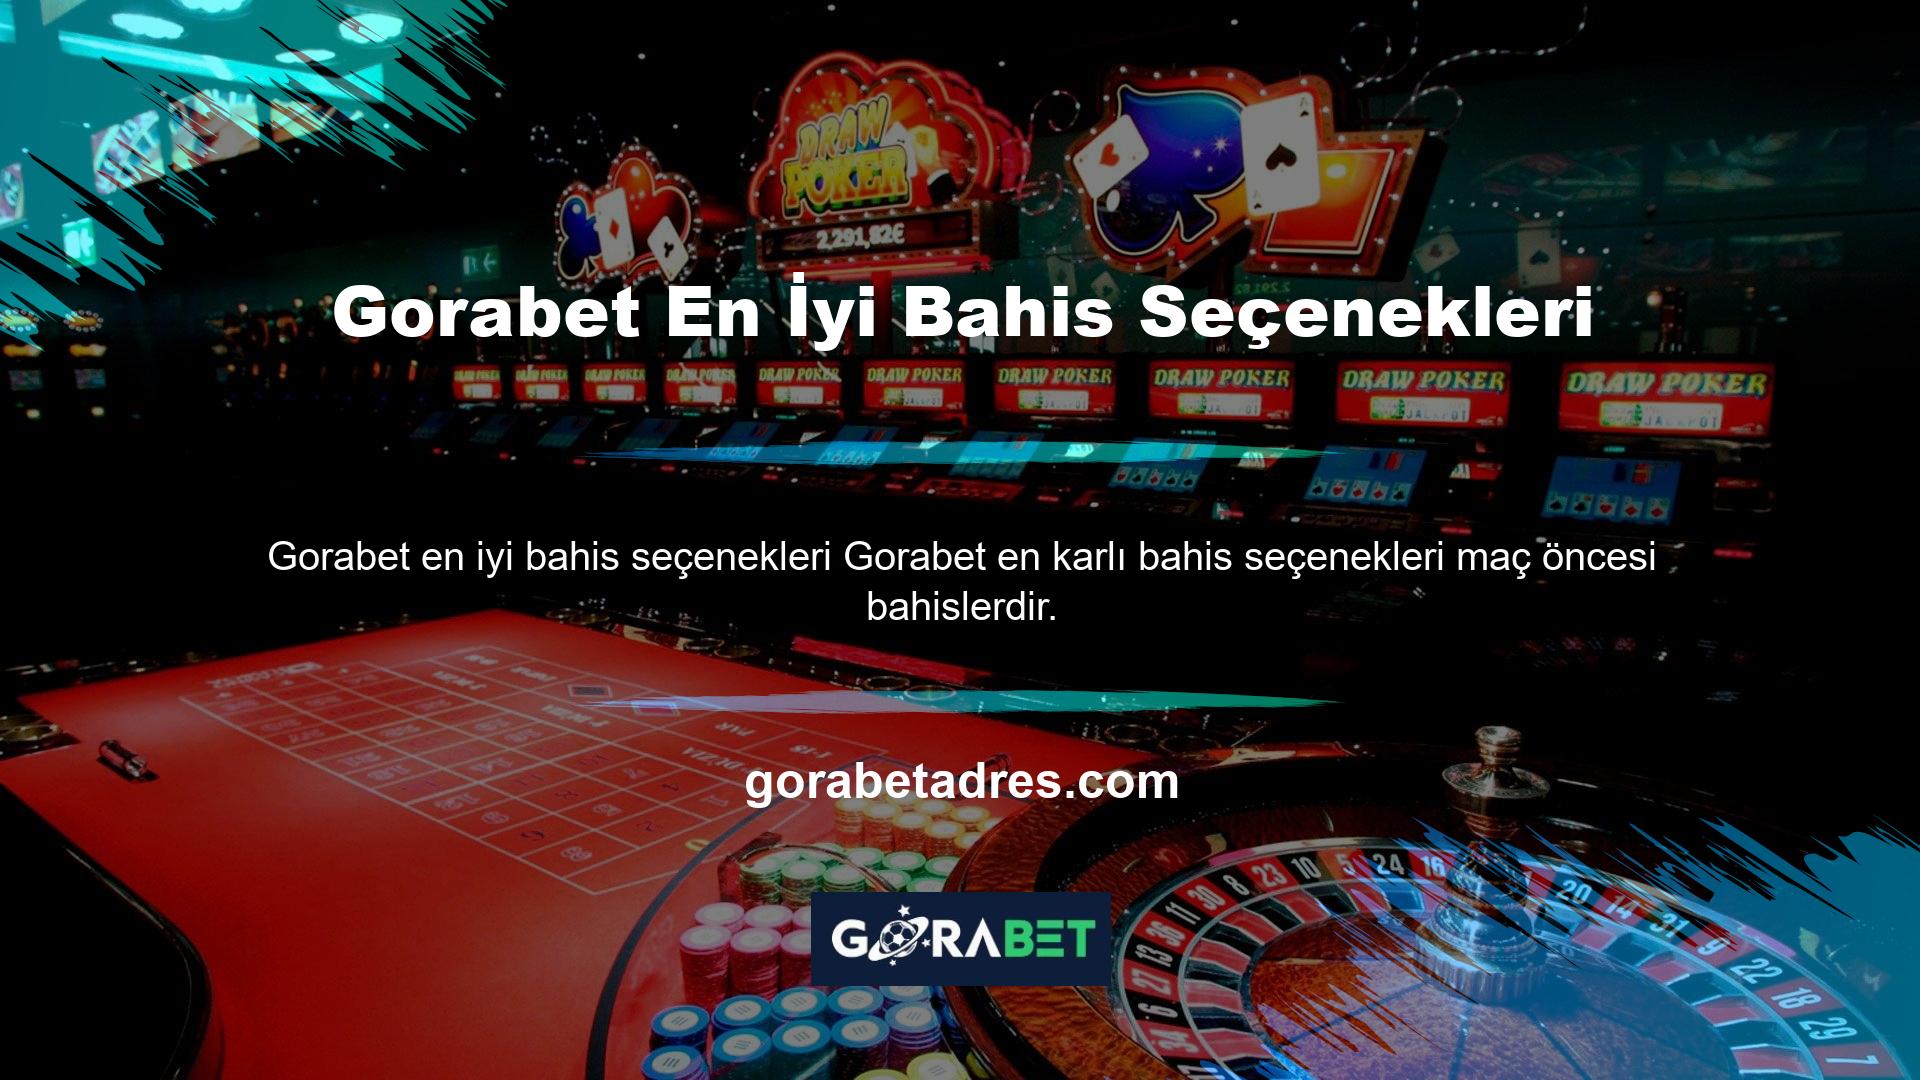 Gorabet web sitesi, üyelerine tahsis edilen kazanç açısından tüm spor izleyicileri arasında ilk sırada yer alarak, alanında lider olduğunu kanıtlamıştır